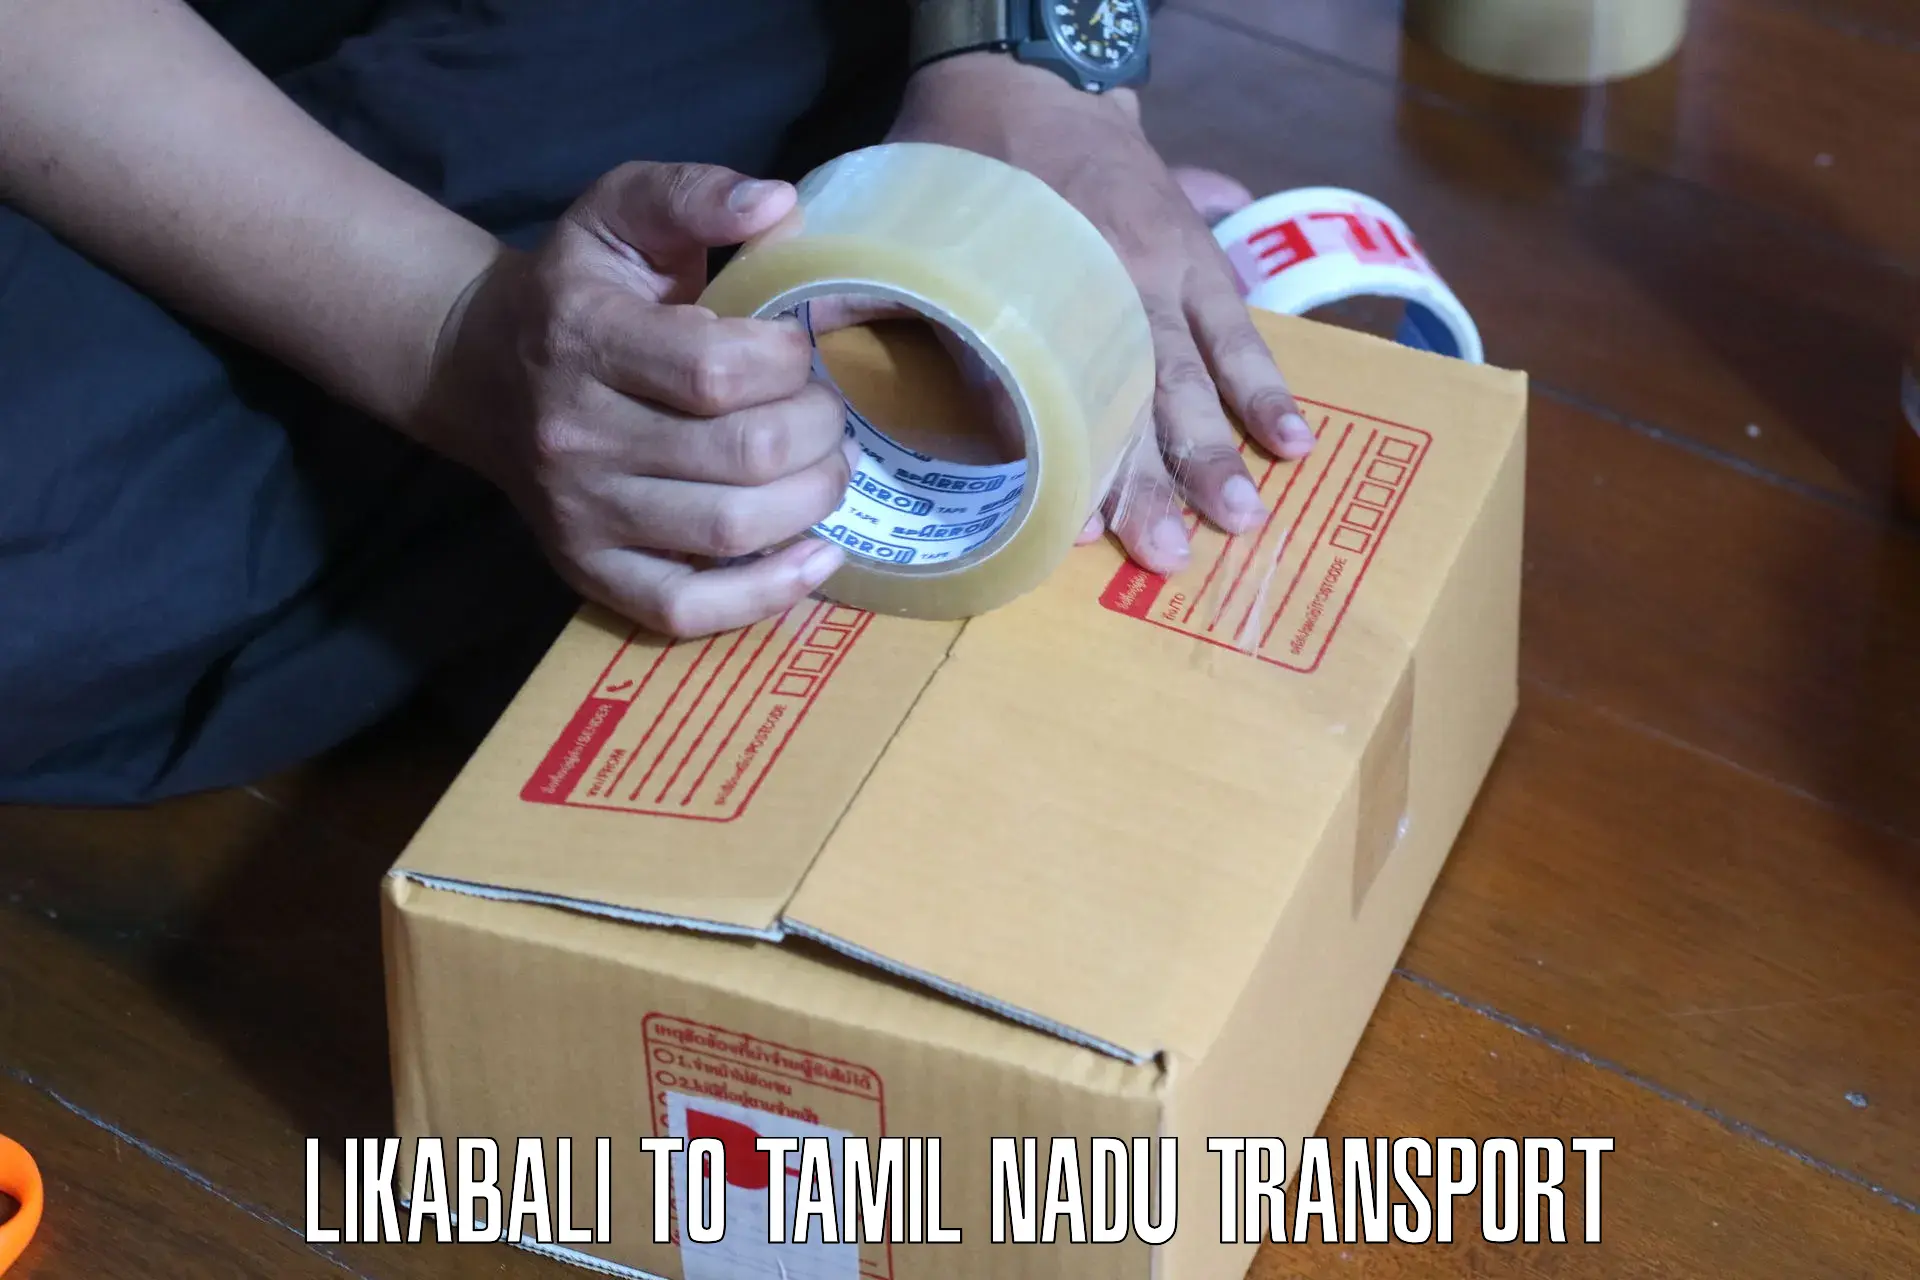 Cargo train transport services Likabali to Thuckalay